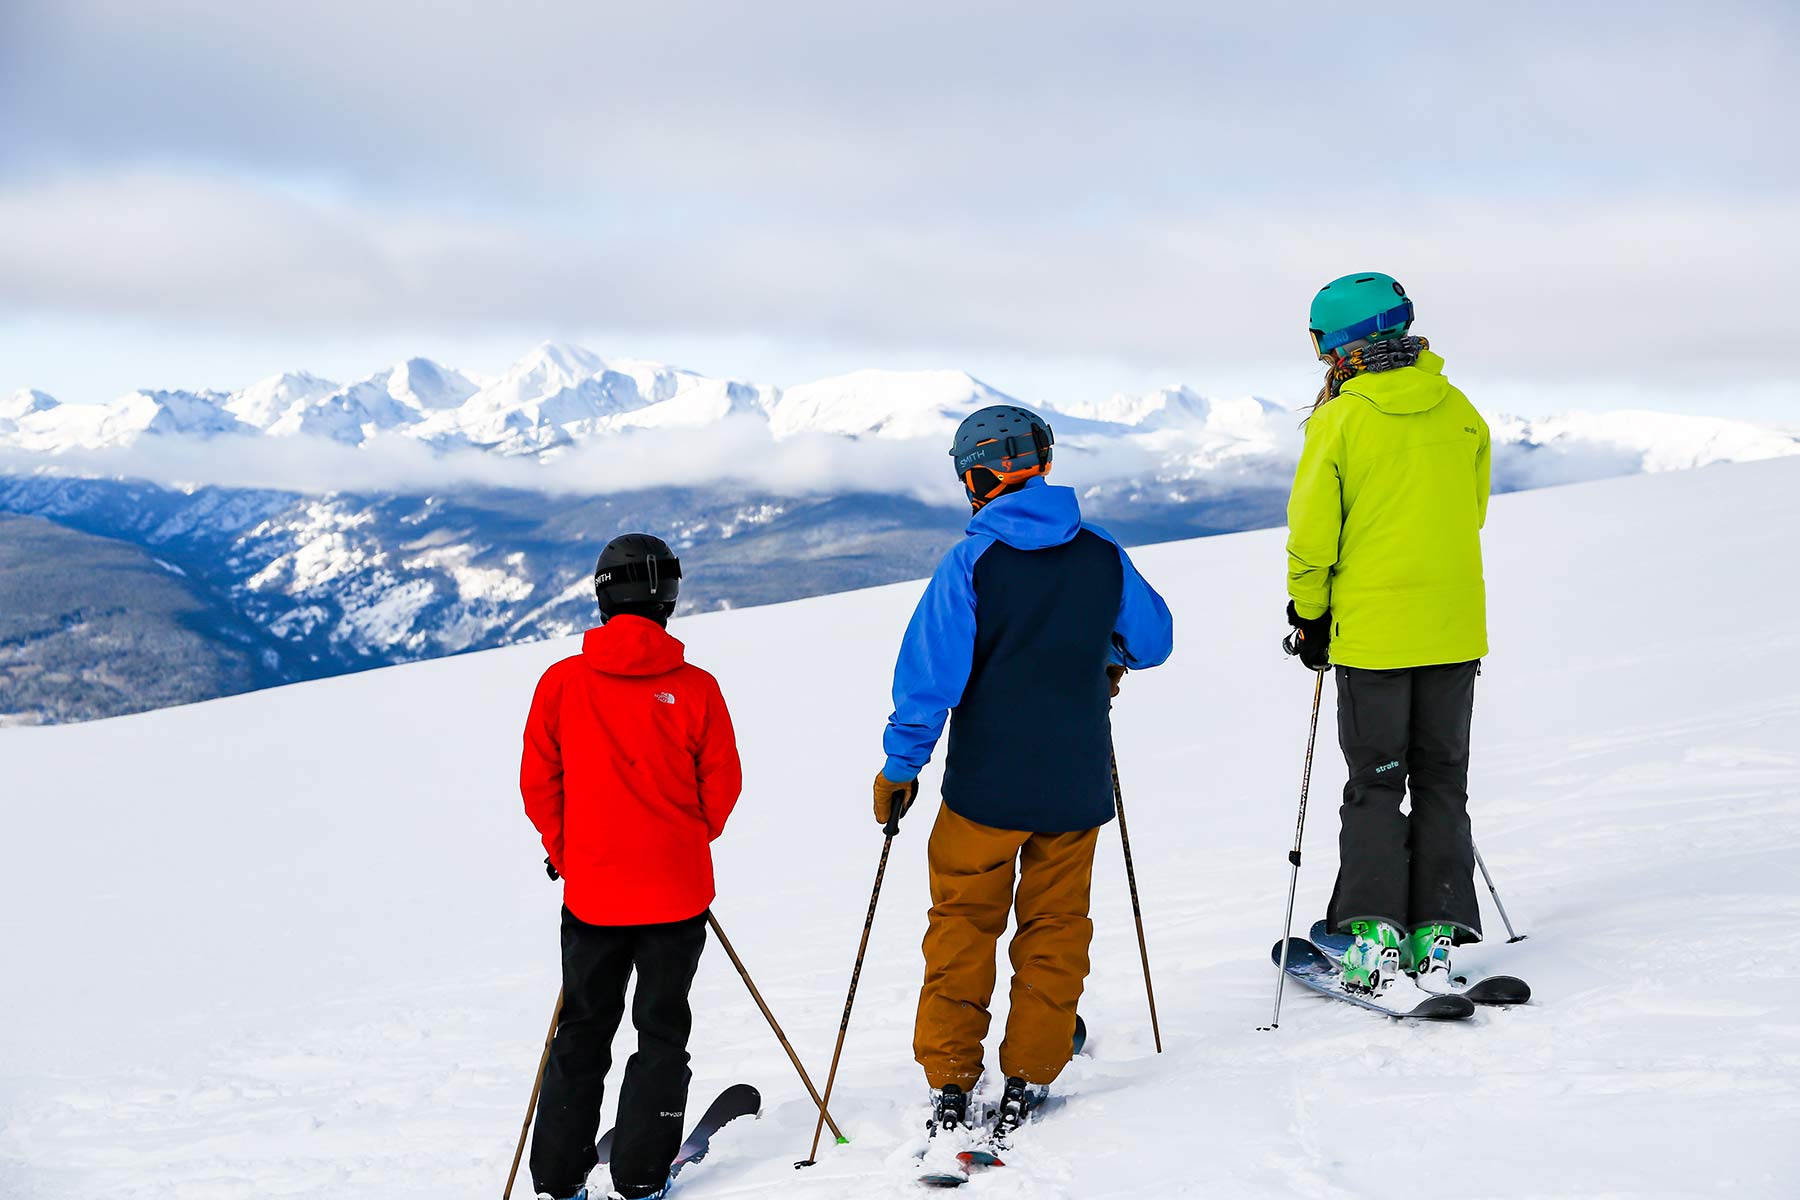 Three skiers on Vail Mountain